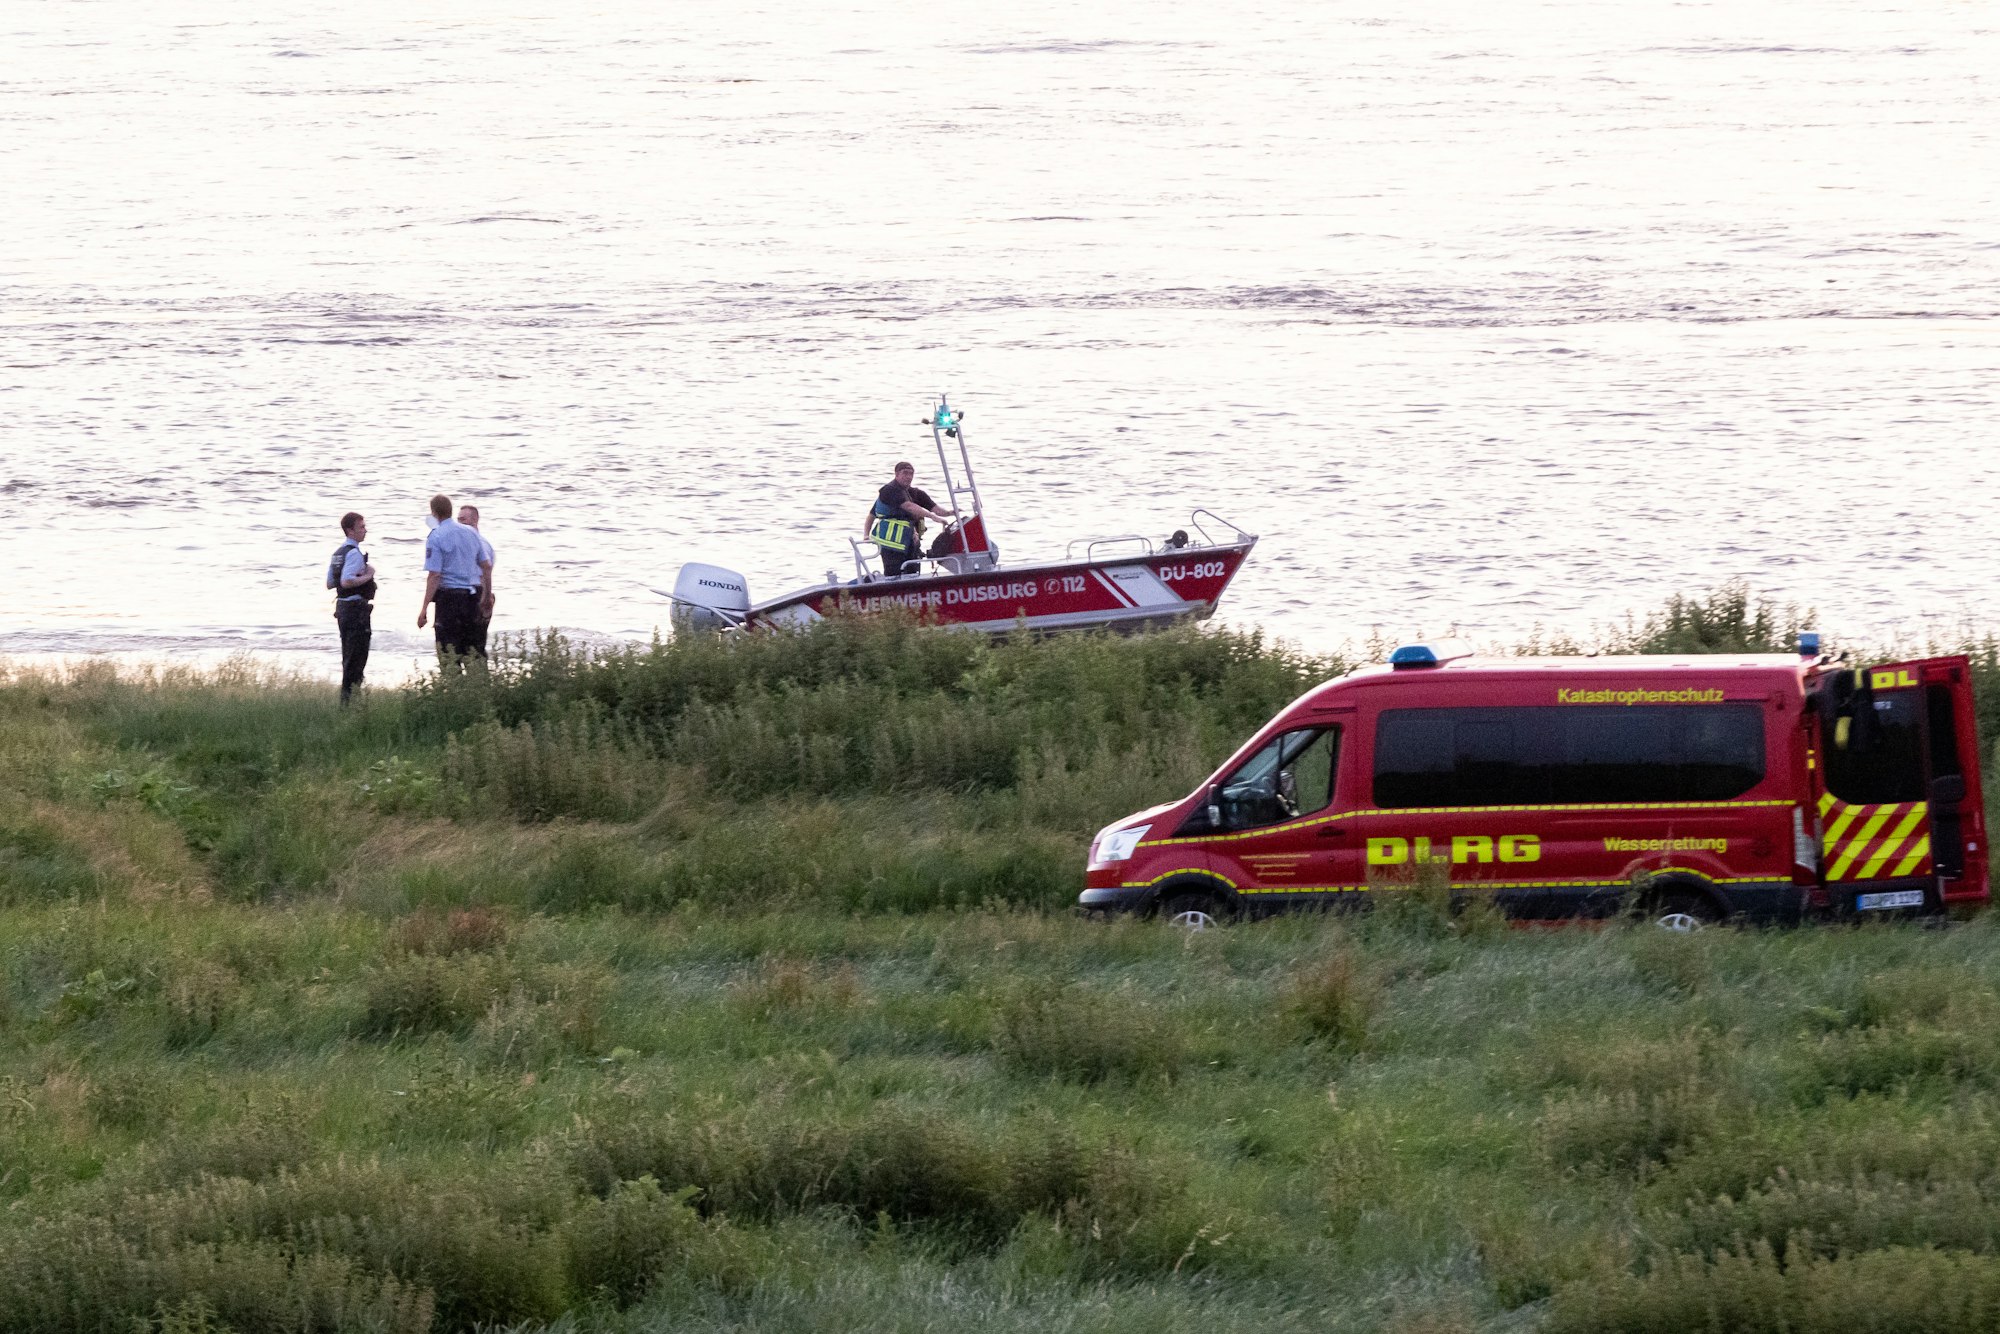 Einsatzkräfte der Polizei, Feuerwehr und DLRG arbeiten am Ufer des Rheins. Auch ein Rettungsboot ist im Einsatz.